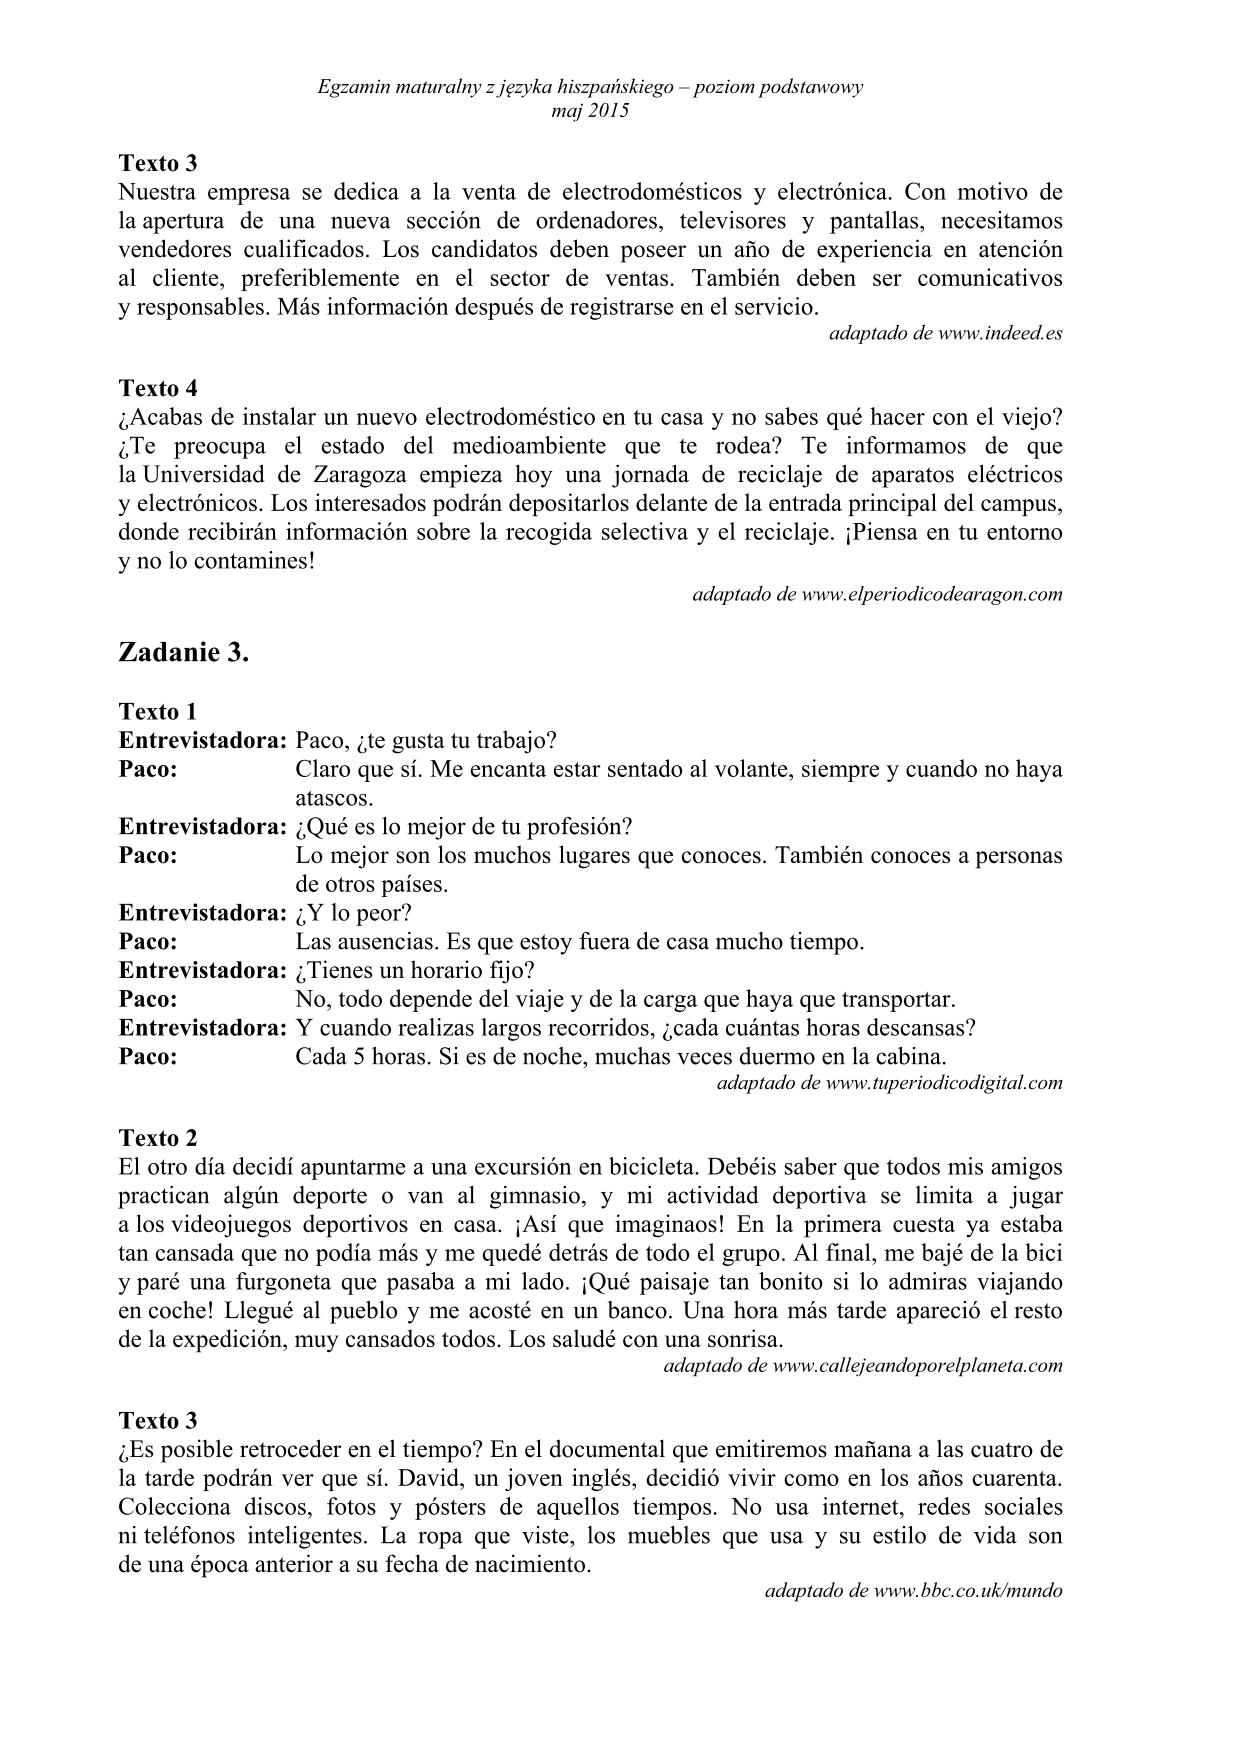 transkrypcja-hiszpanski-poziom-podstawowy-matura-2015-2